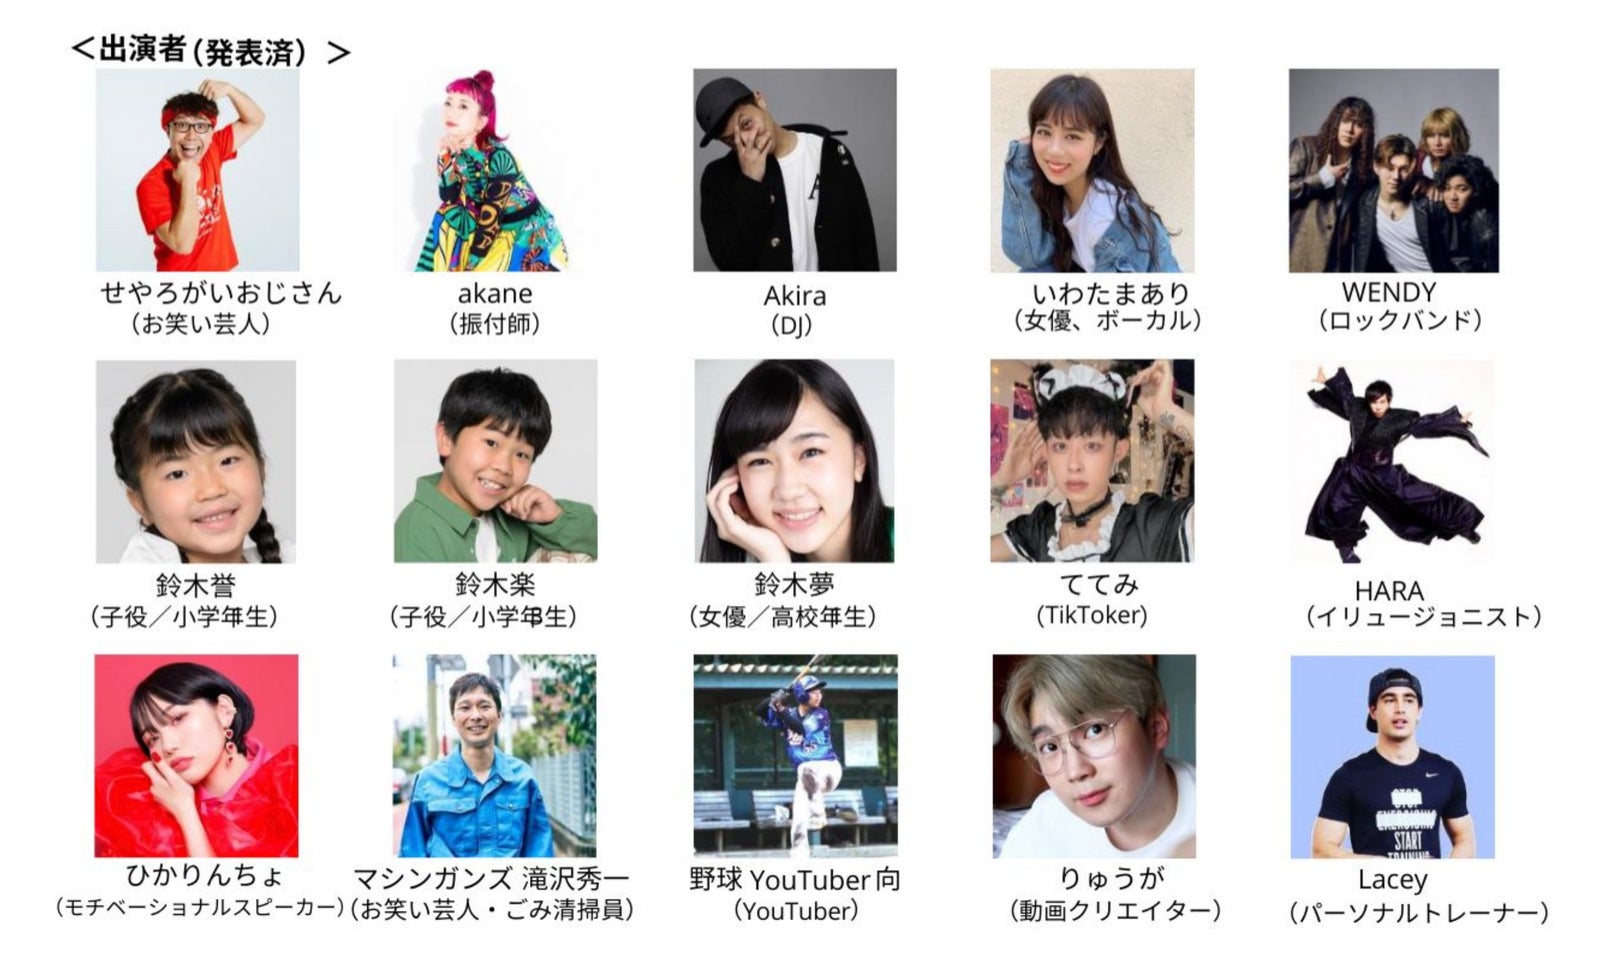 すみれさん、尾木ママ、よしミチ、… 追加出演者 10 組を発表！総勢 30 組の著名人による 社会貢献（SDGs）×エンターテインメントイベントのサブ画像4